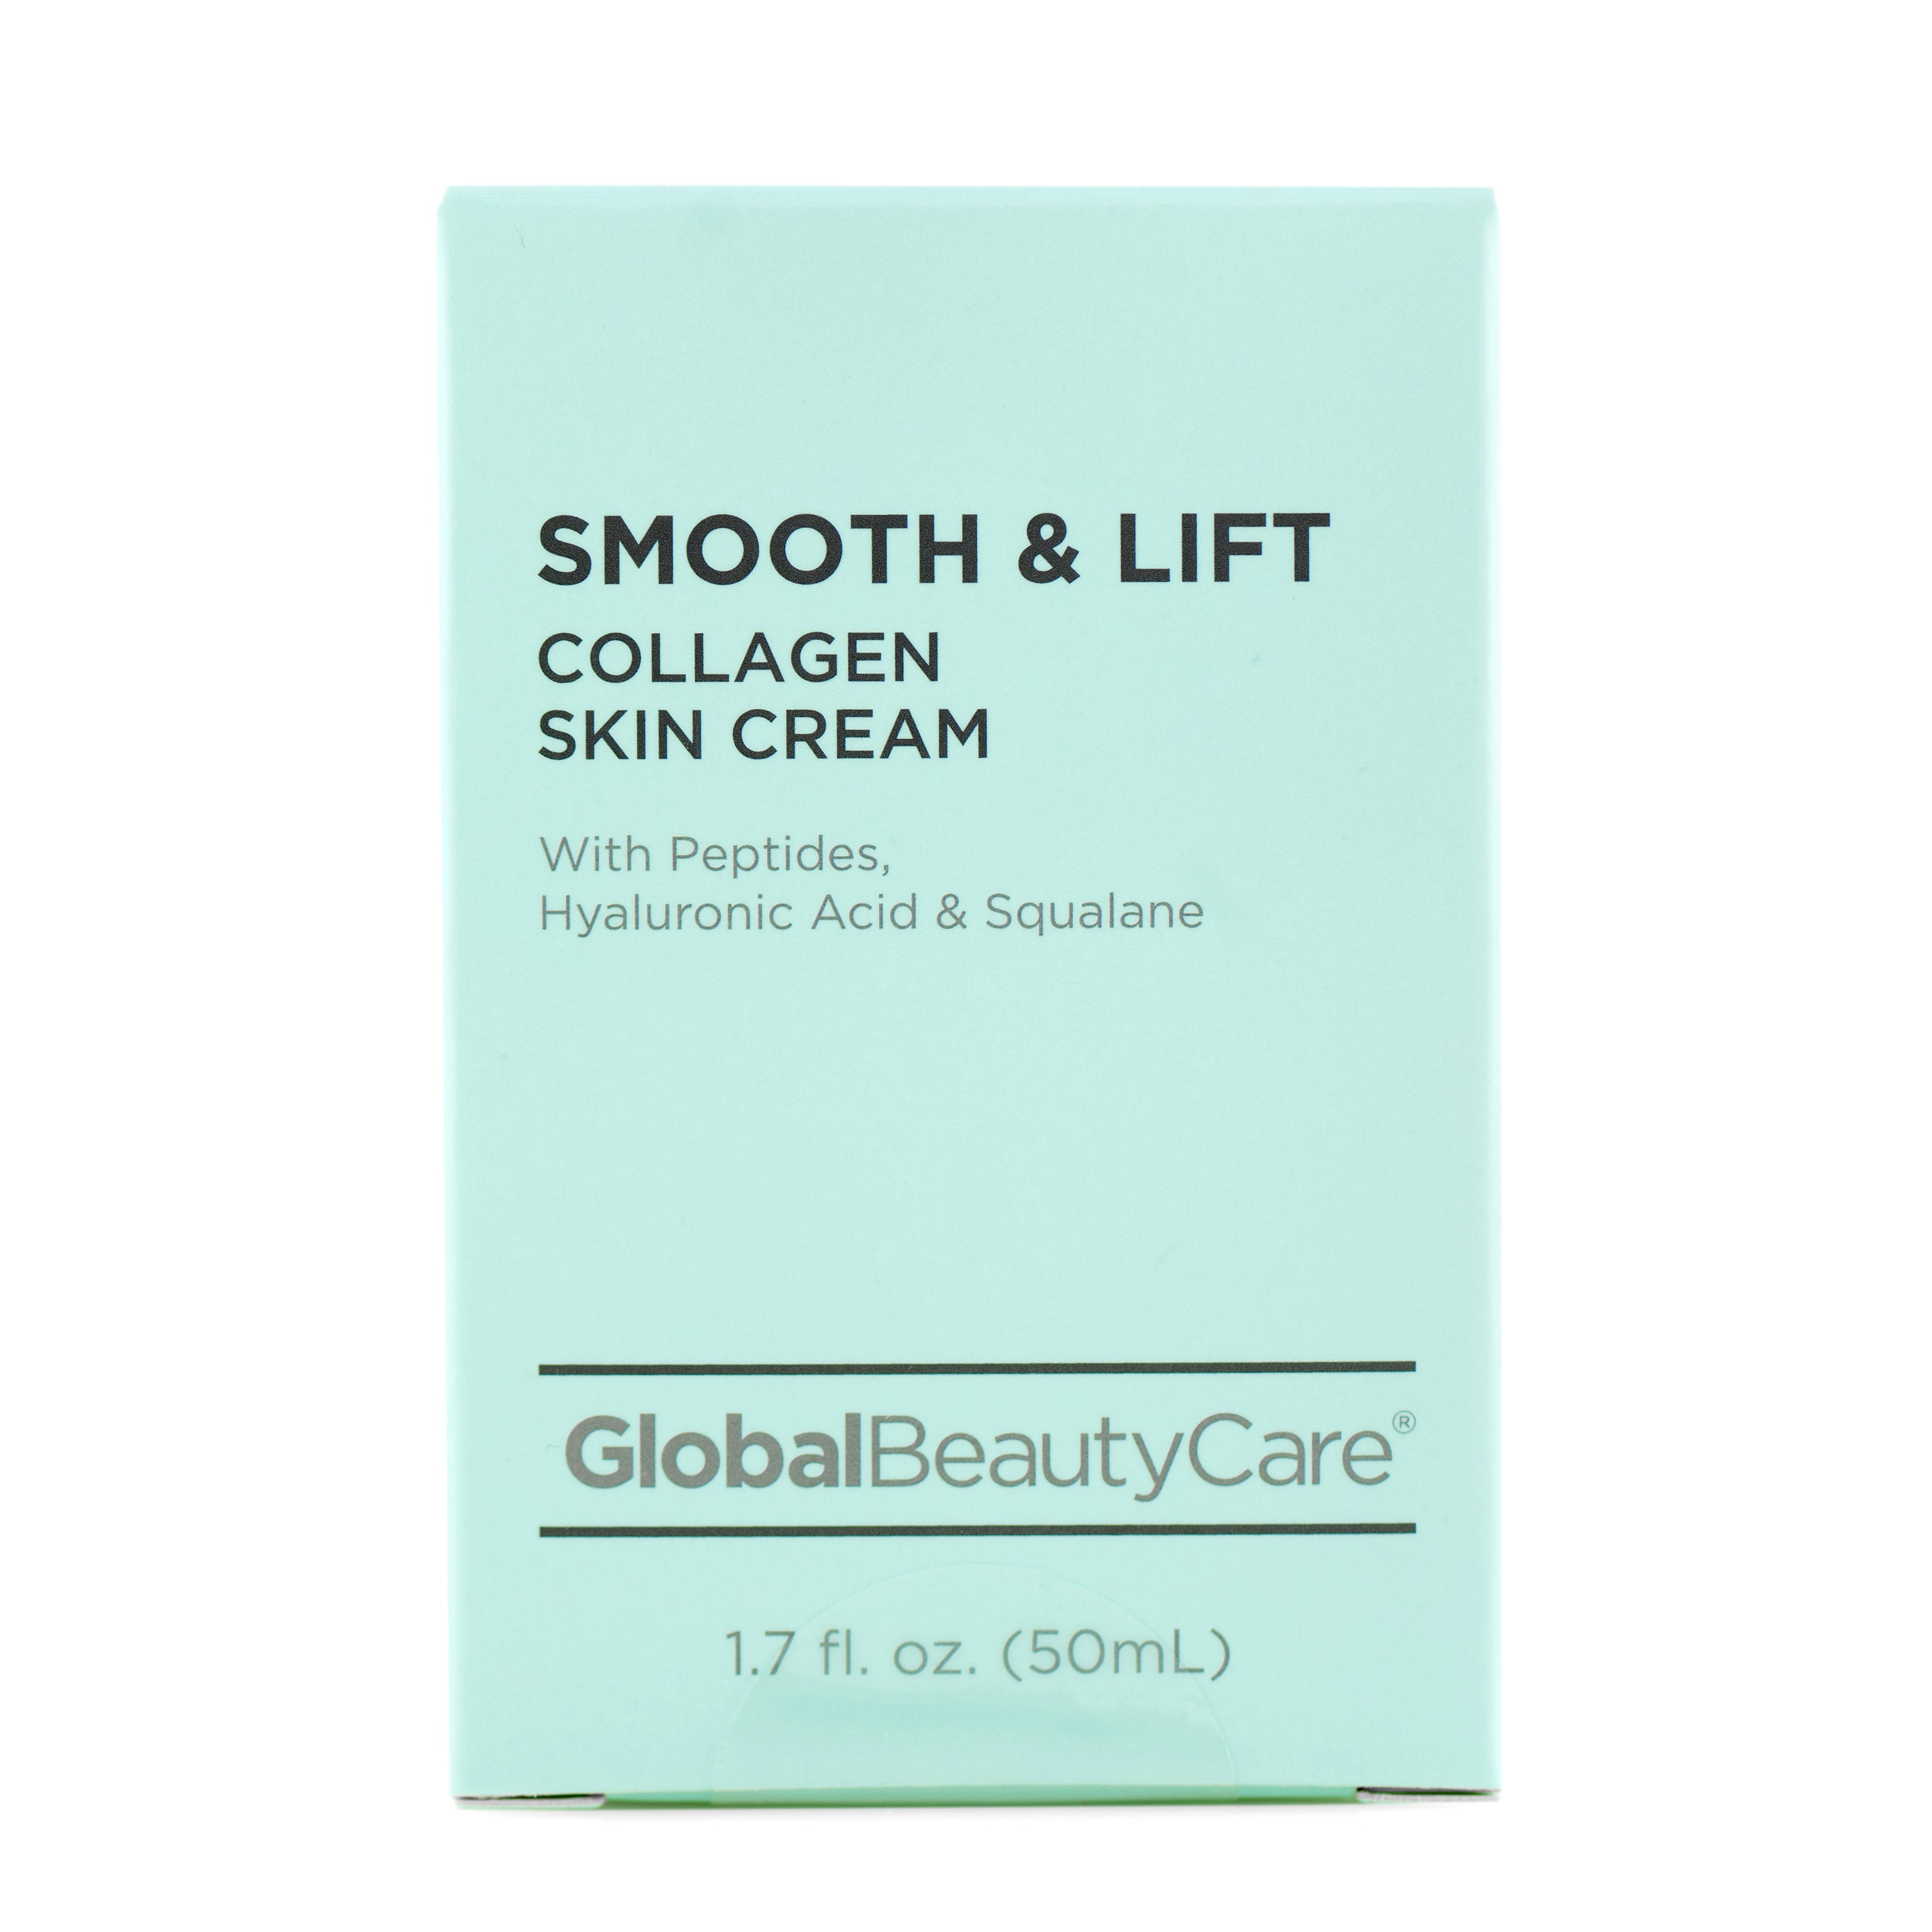 Smooth & Lift Collagen Skin Cream